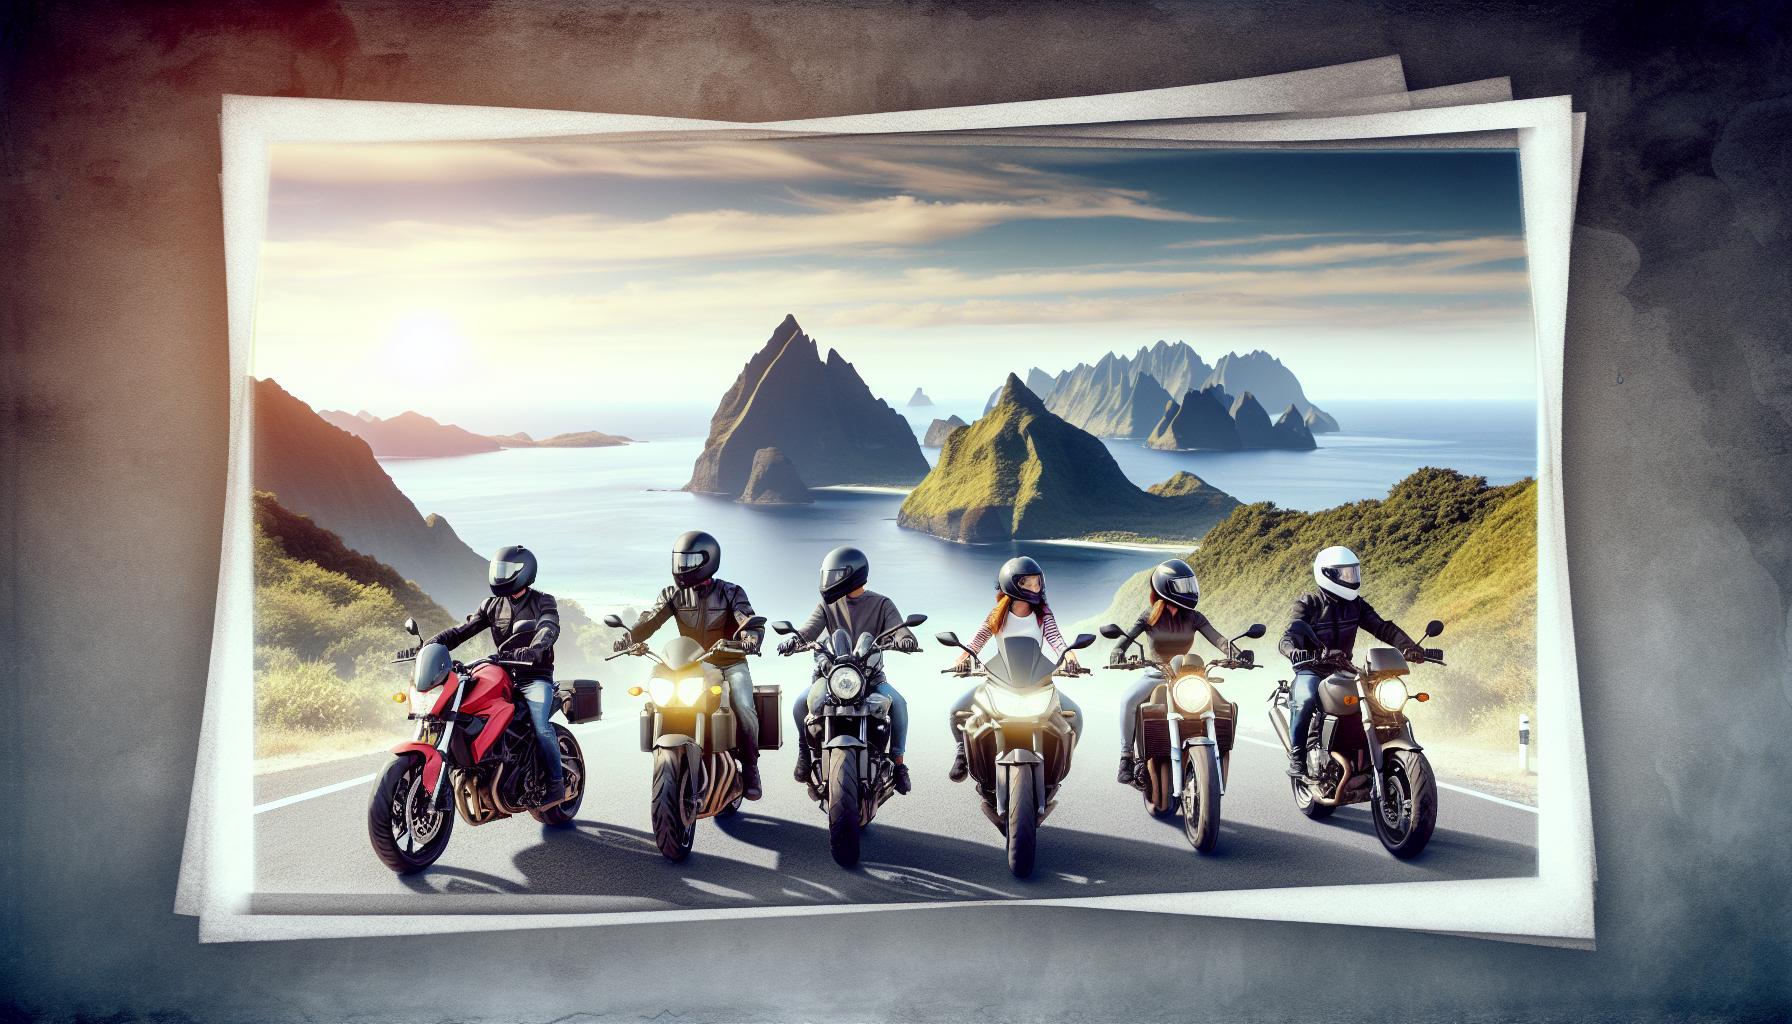 découvrez les avantages de souscrire une assurance moto à la réunion. protégez-vous et votre moto avec notre assurance moto adaptée à la réalité réunionnaise.